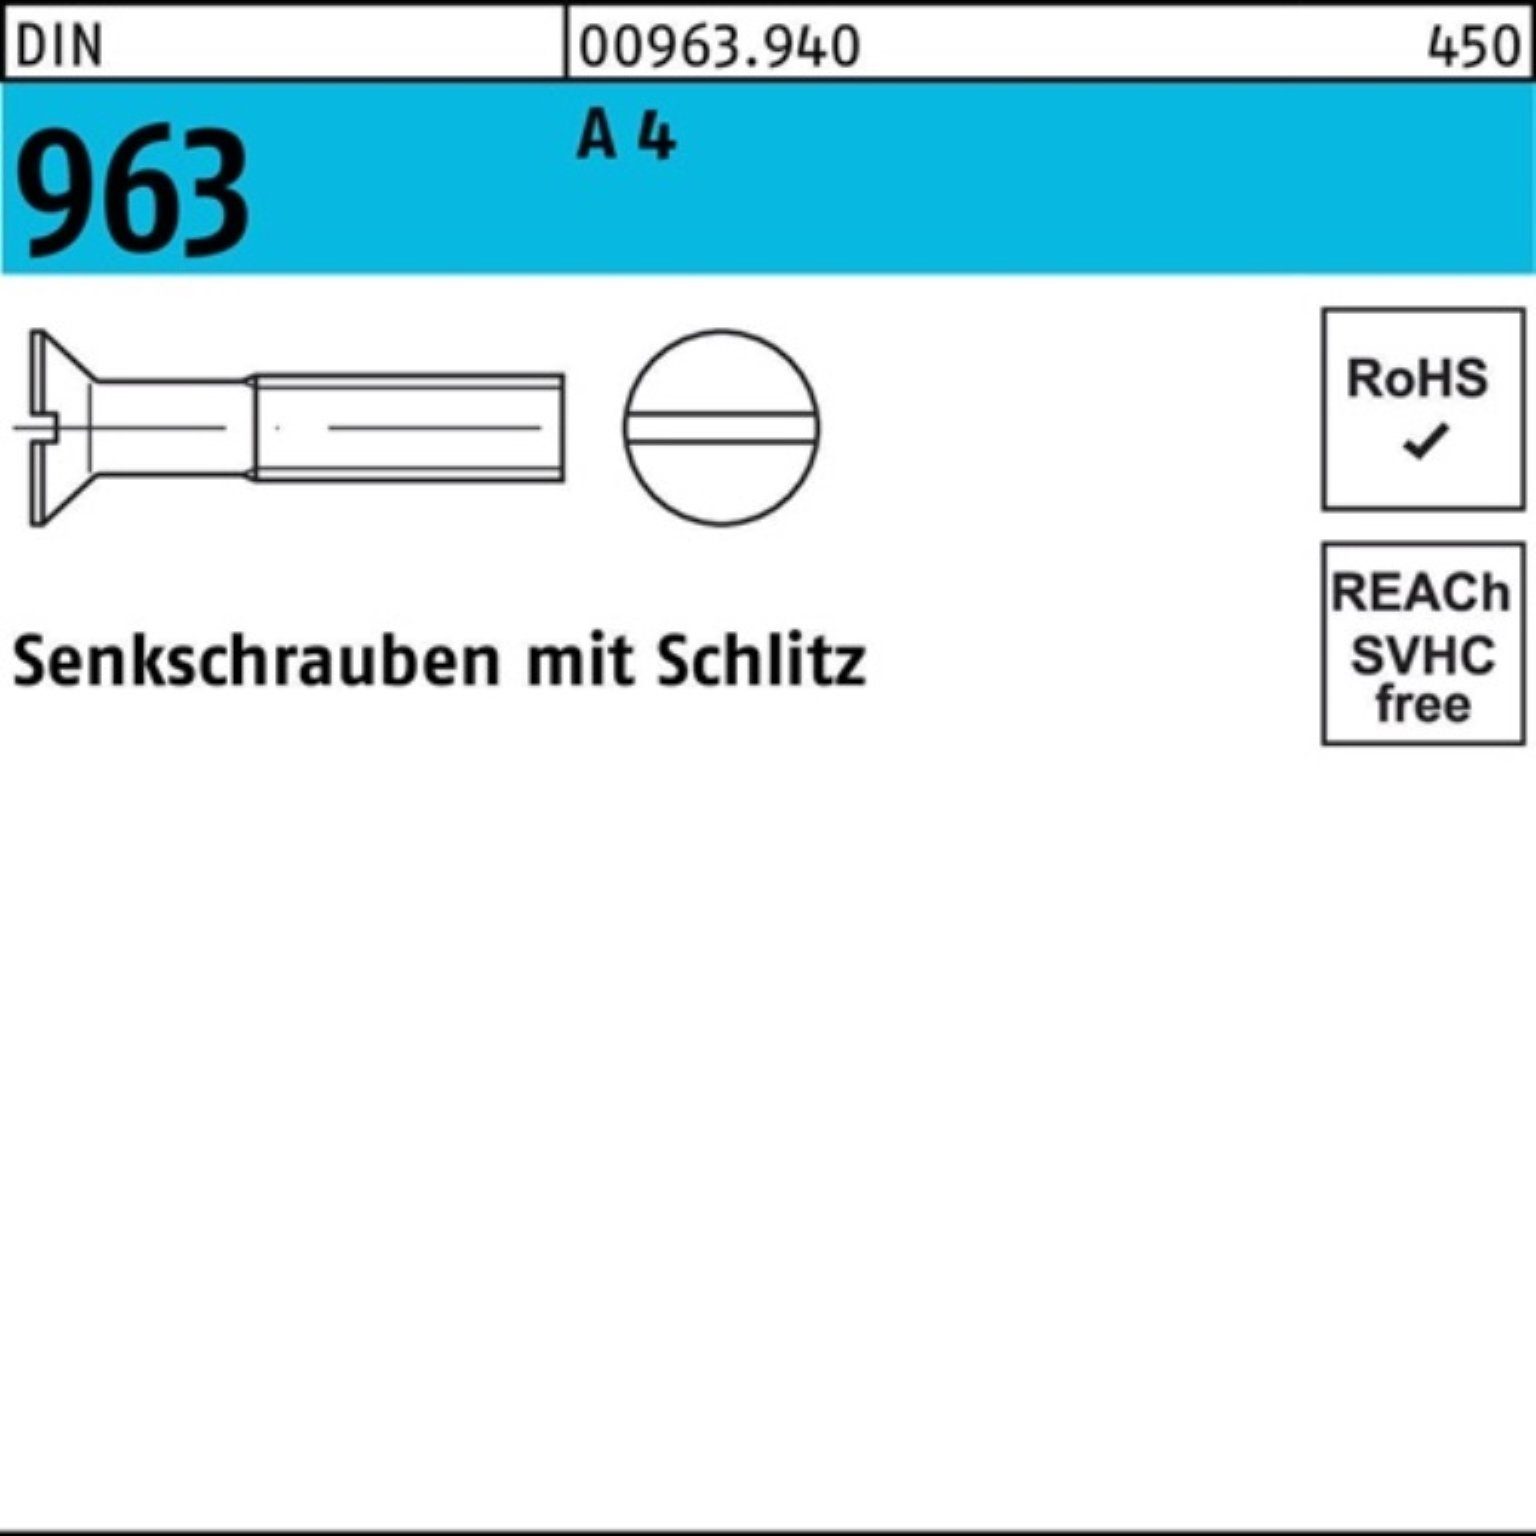 Reyher Senkschraube Schlitz 25 963 DIN 100 4 Stück A M8x 963 100er Senkschraube Pack DIN